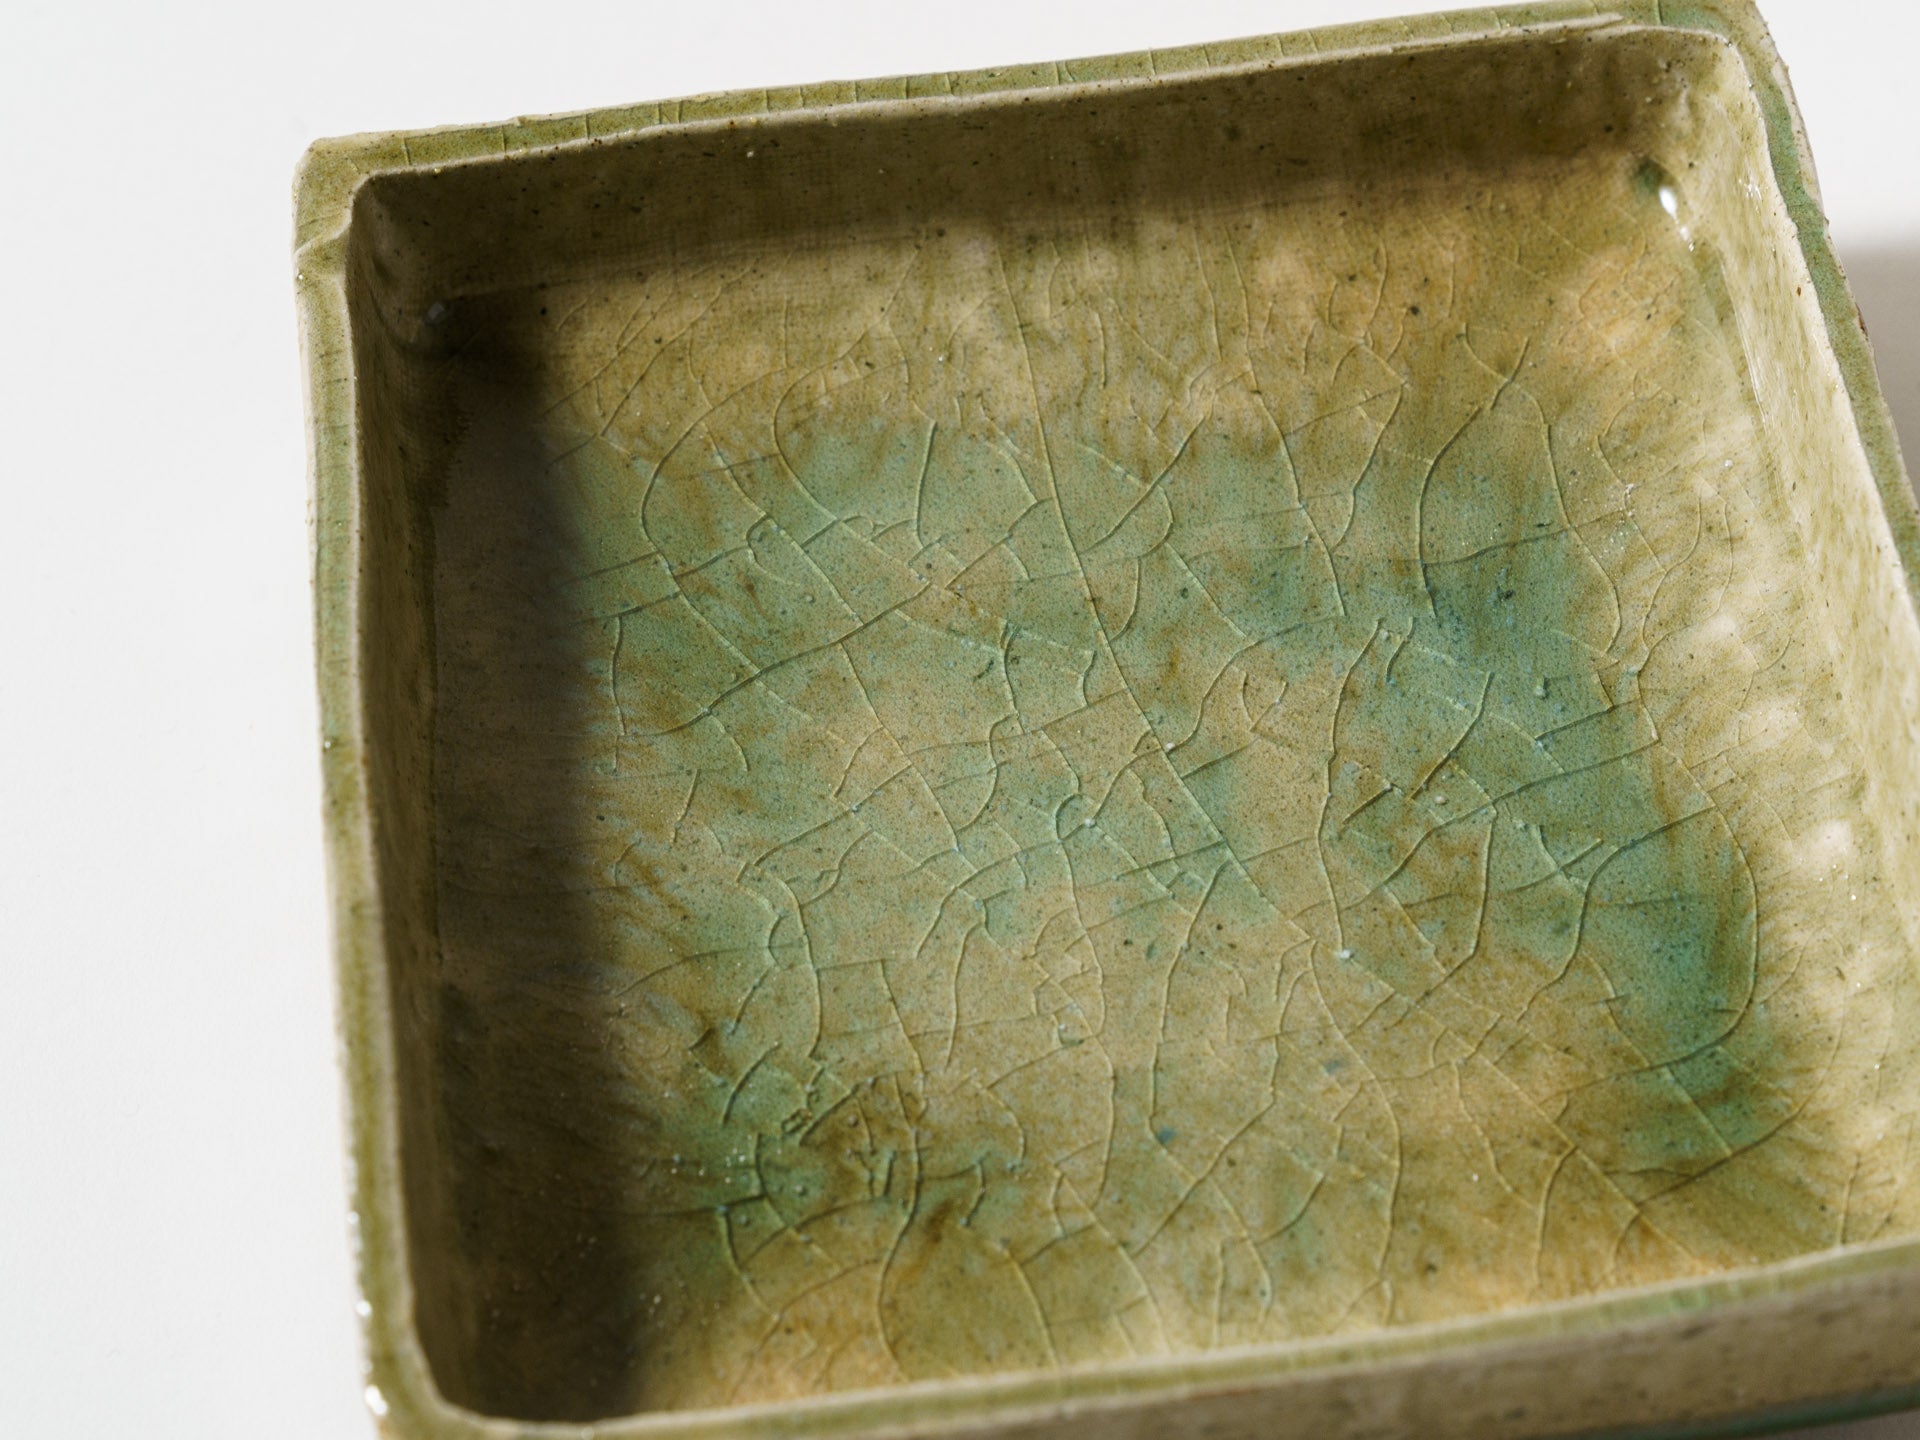 Vidro glaze square bowl [Kazuji Sato]